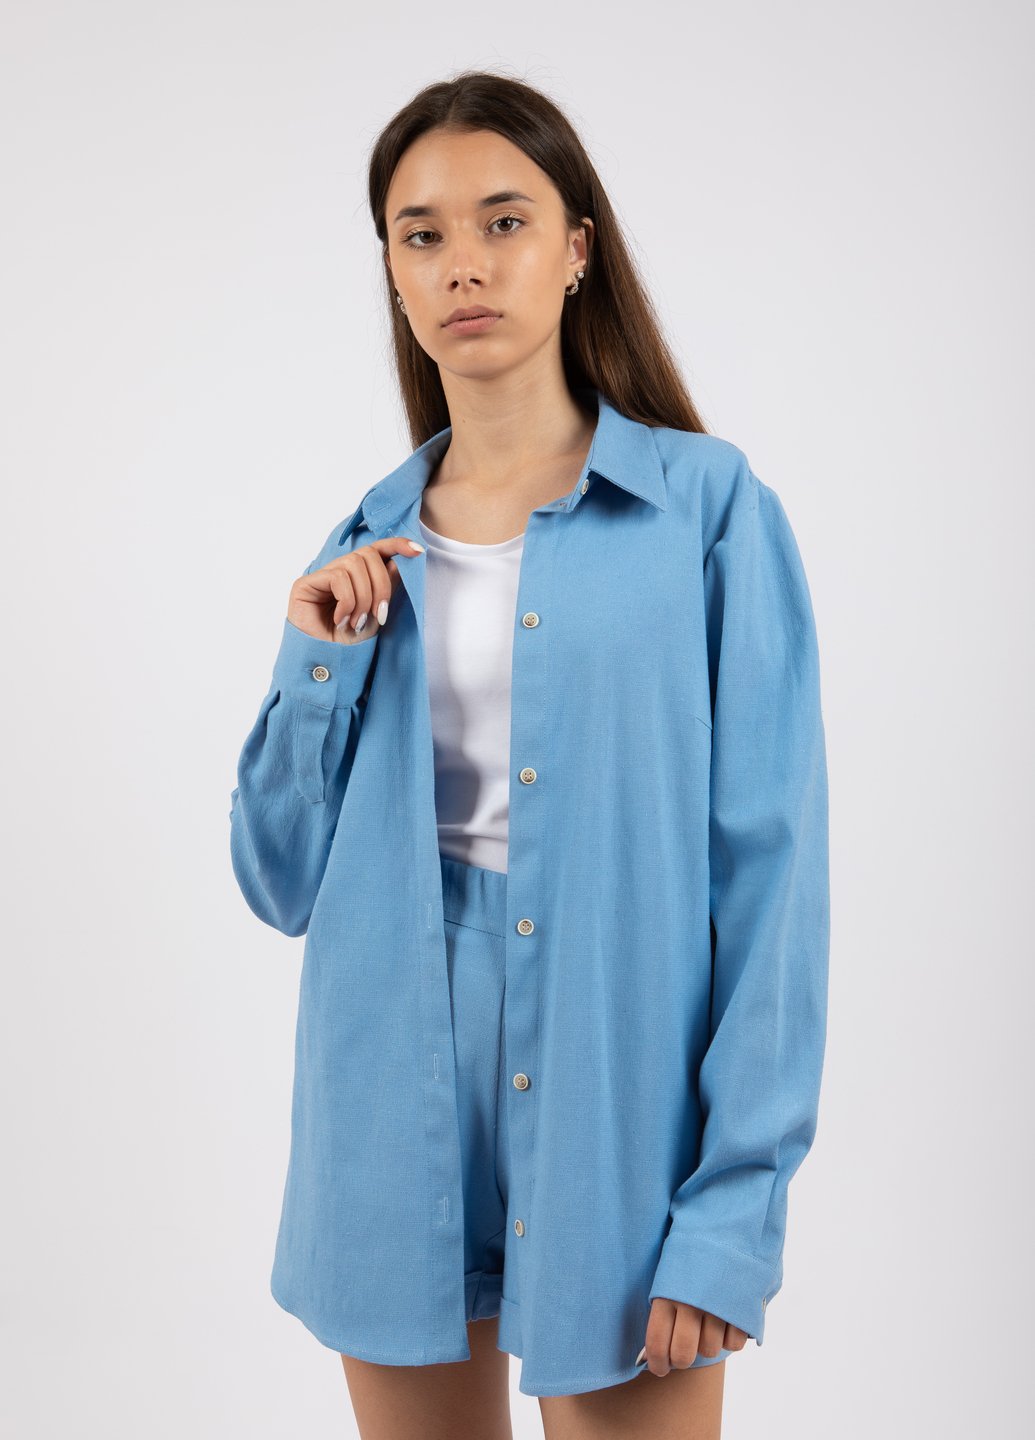 Купить Классическая льняная рубашка женская Merlini Прага 200000026 - Голубой, 42-44 в интернет-магазине